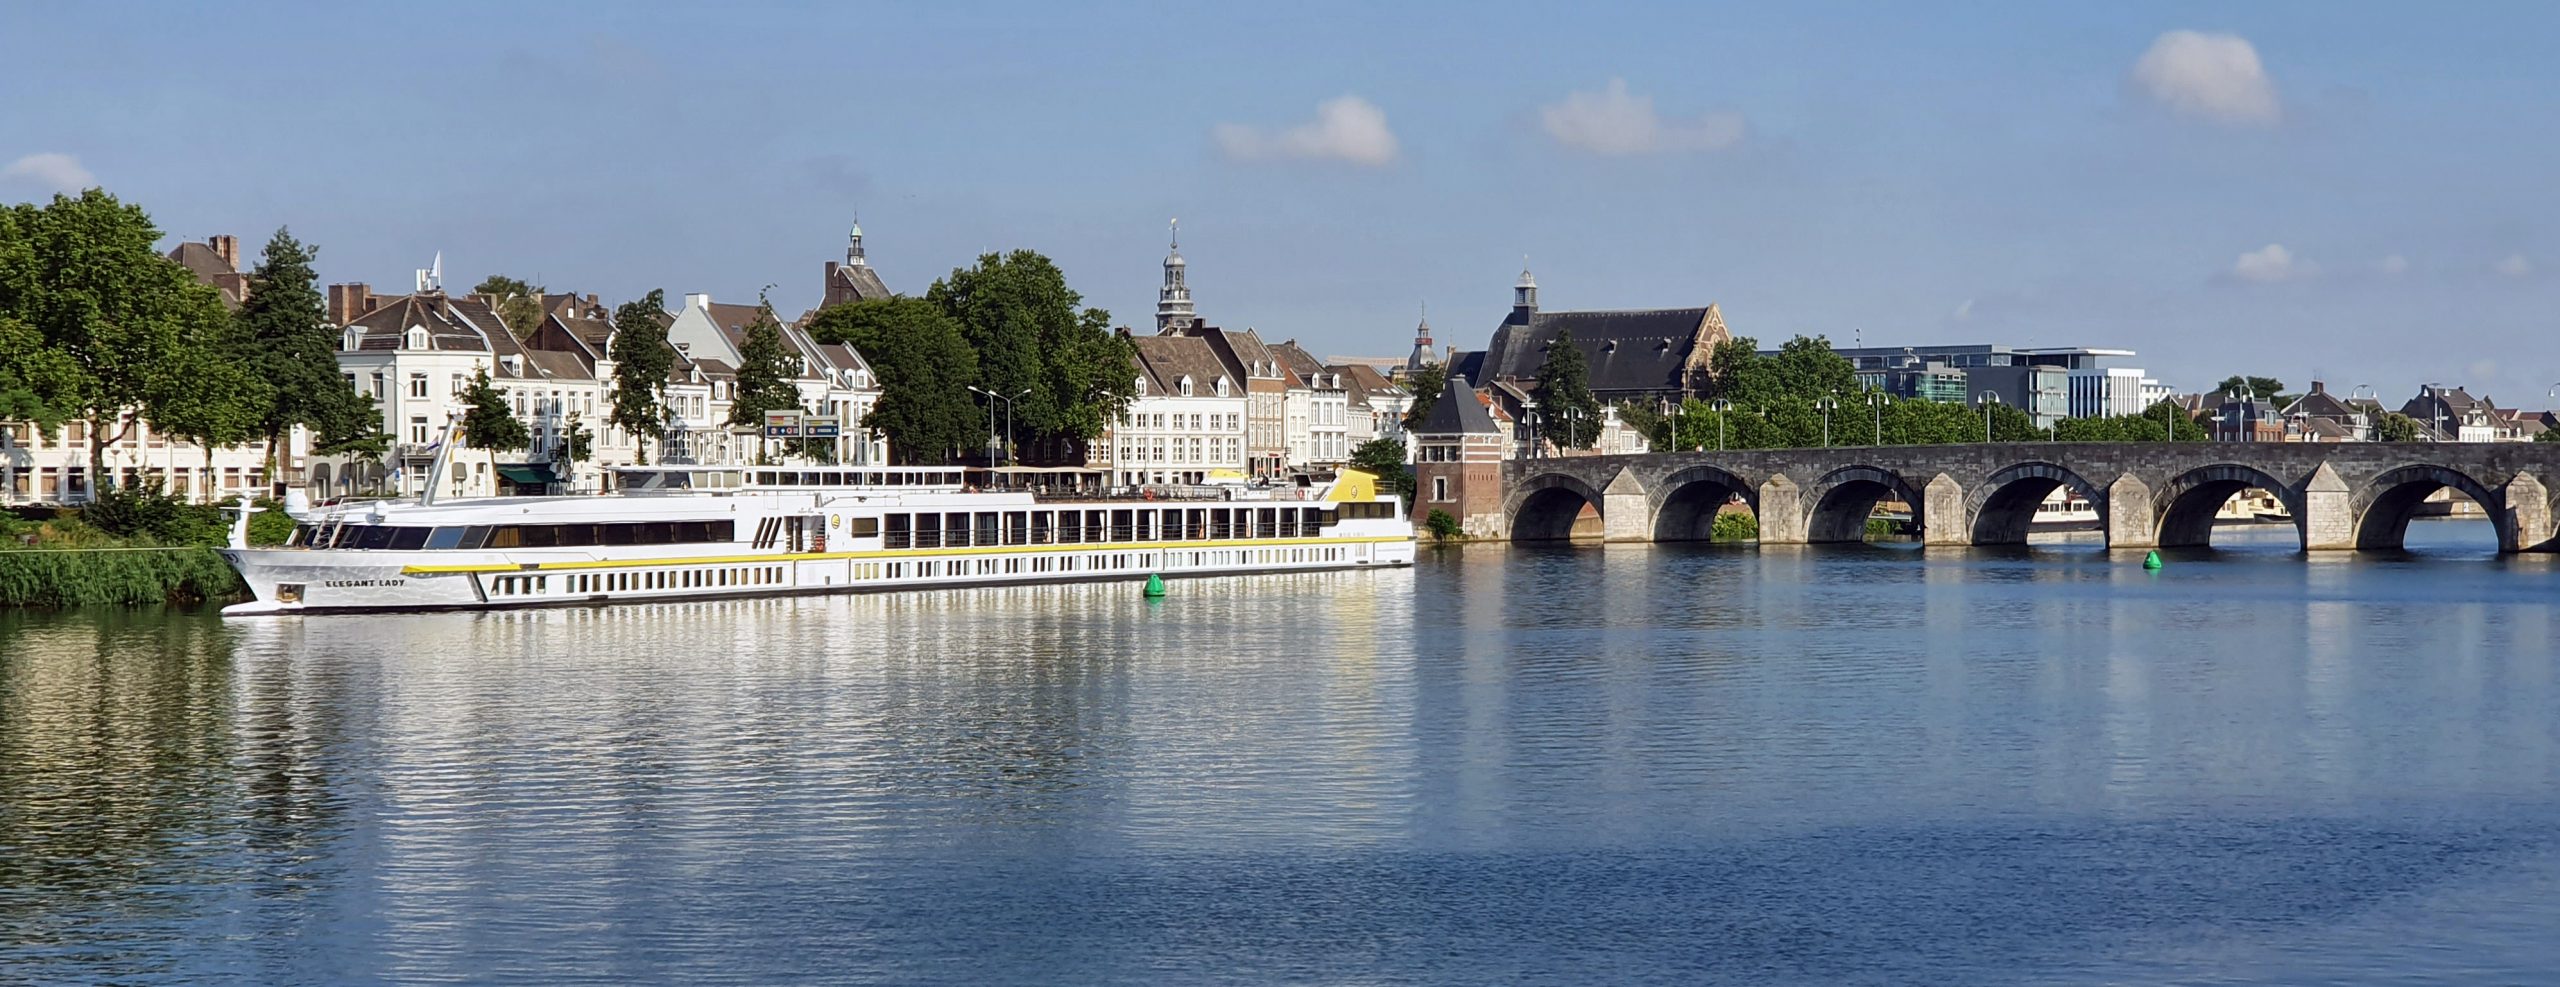 Blick auf die Elegant Lady in Maastricht auf der Kreuzfahrt durch die Niederlande